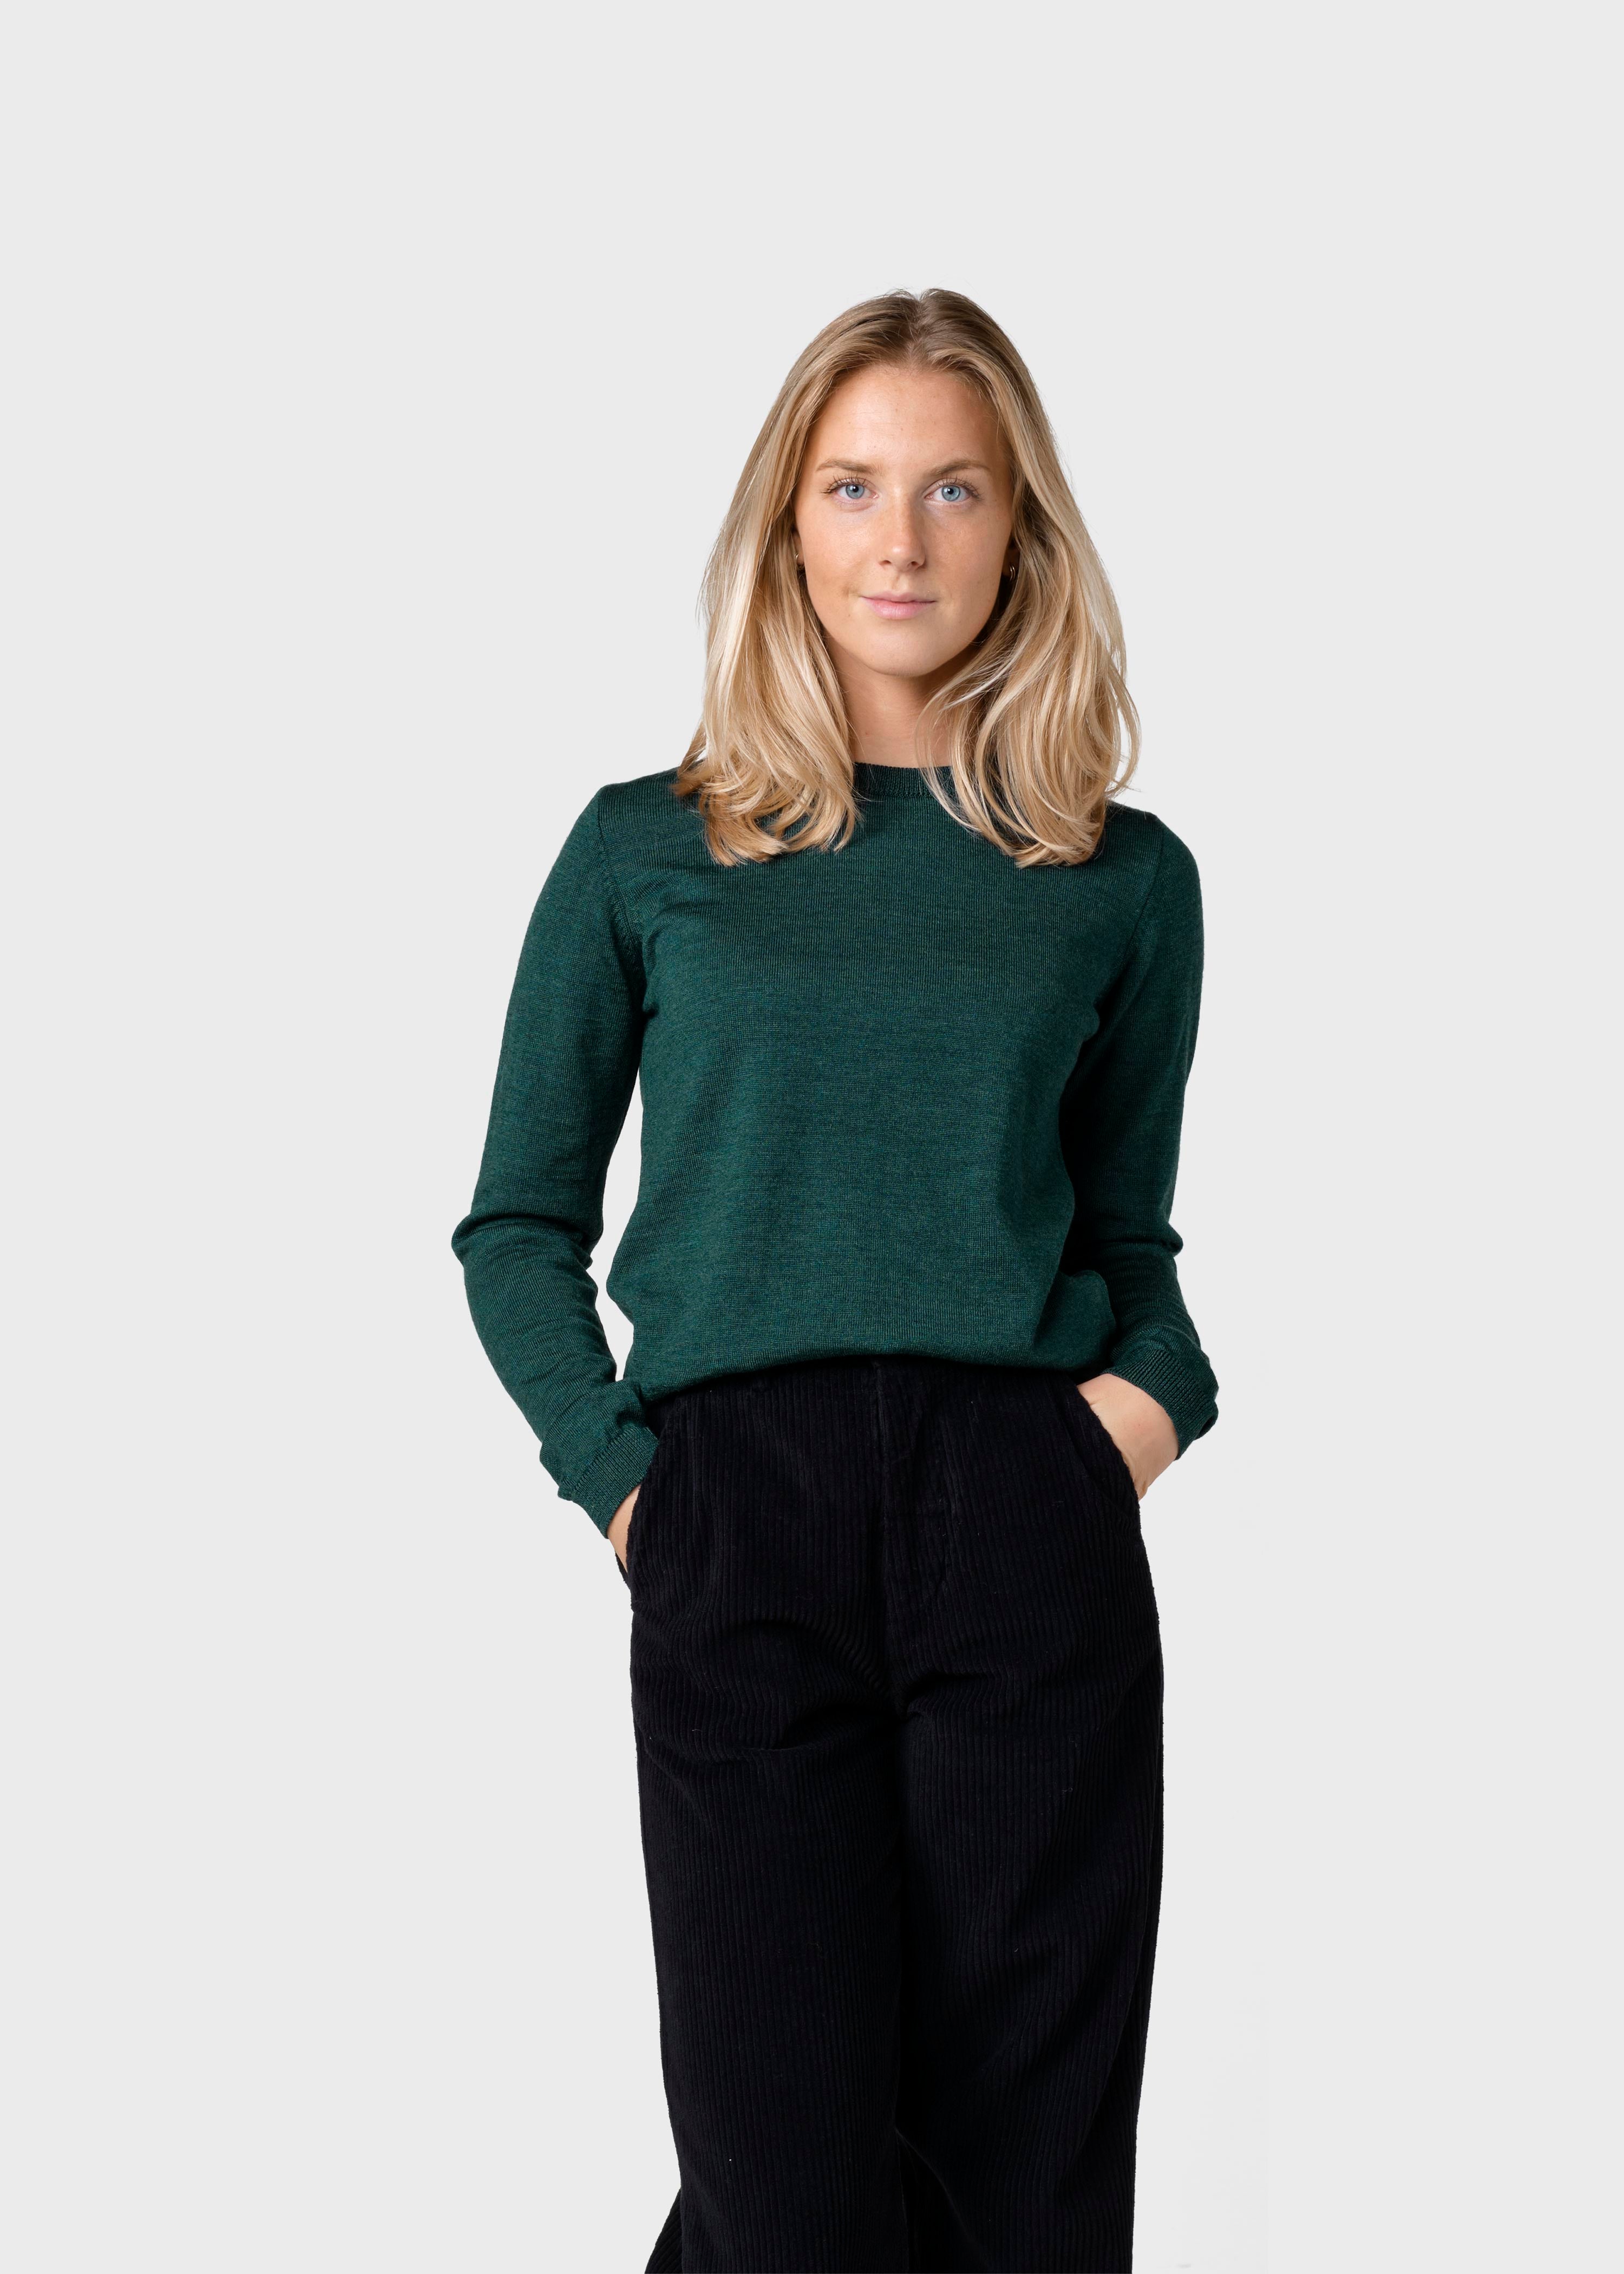 Women's thin Merino Wool Sweater Green